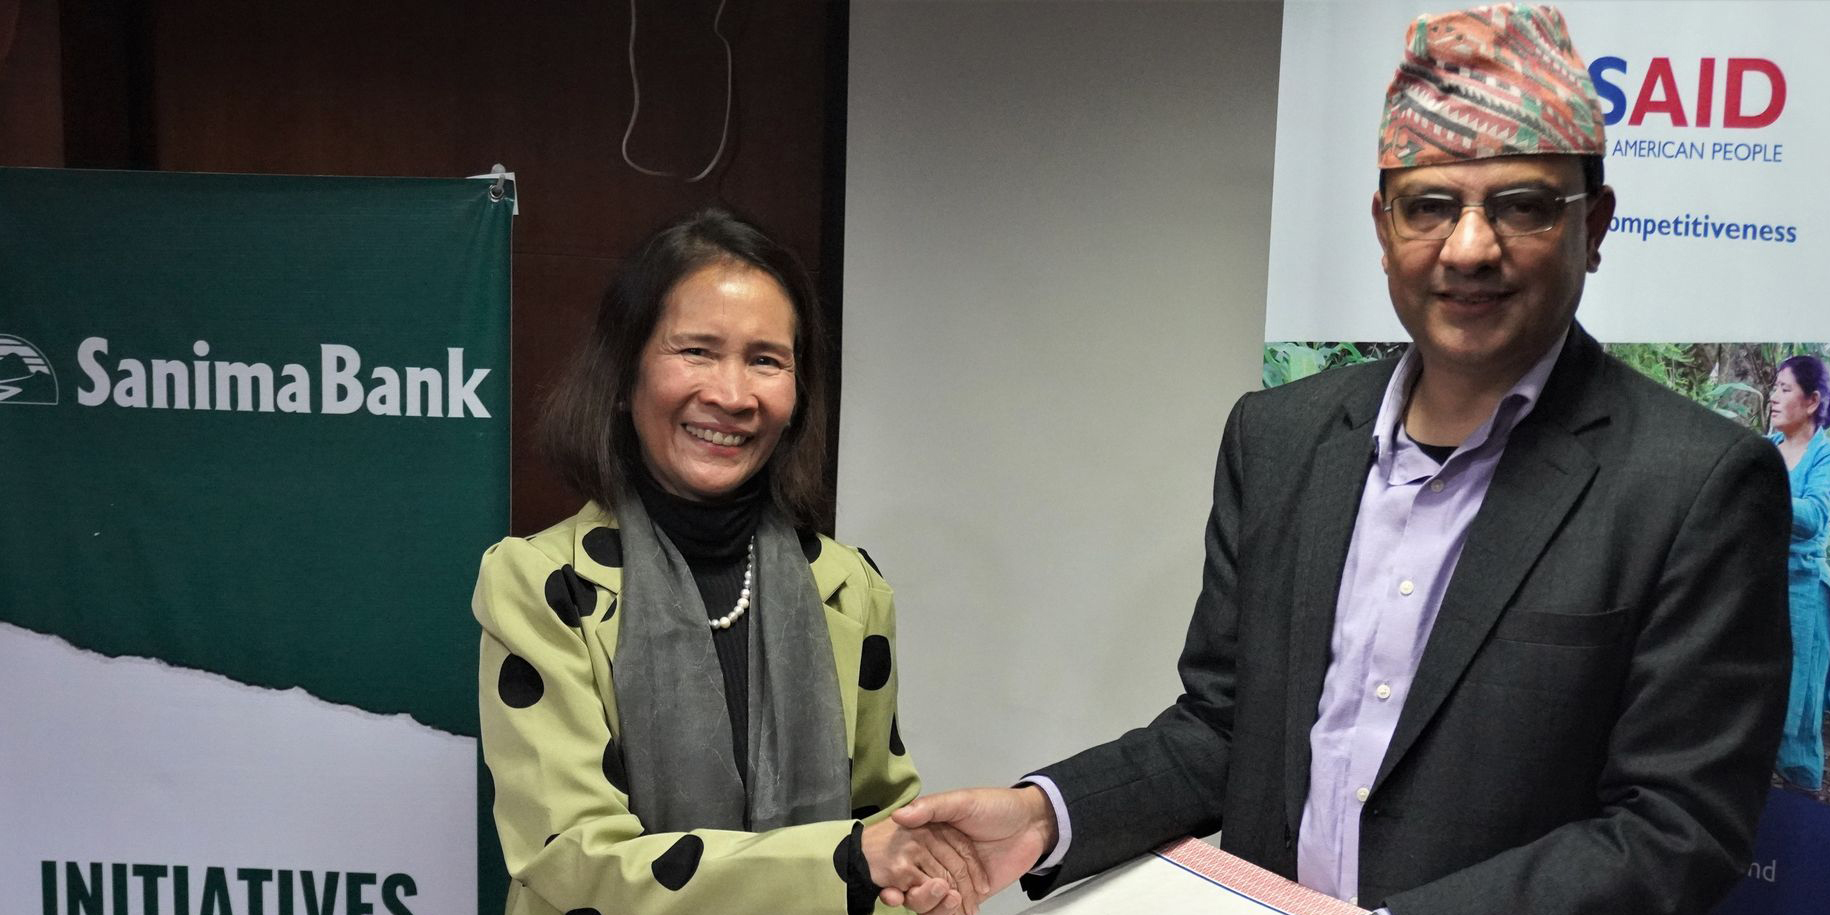 साना व्यवसाय प्रवर्द्धनका लागि यूएसएडसँग सानिमा बैंकको सहकार्य